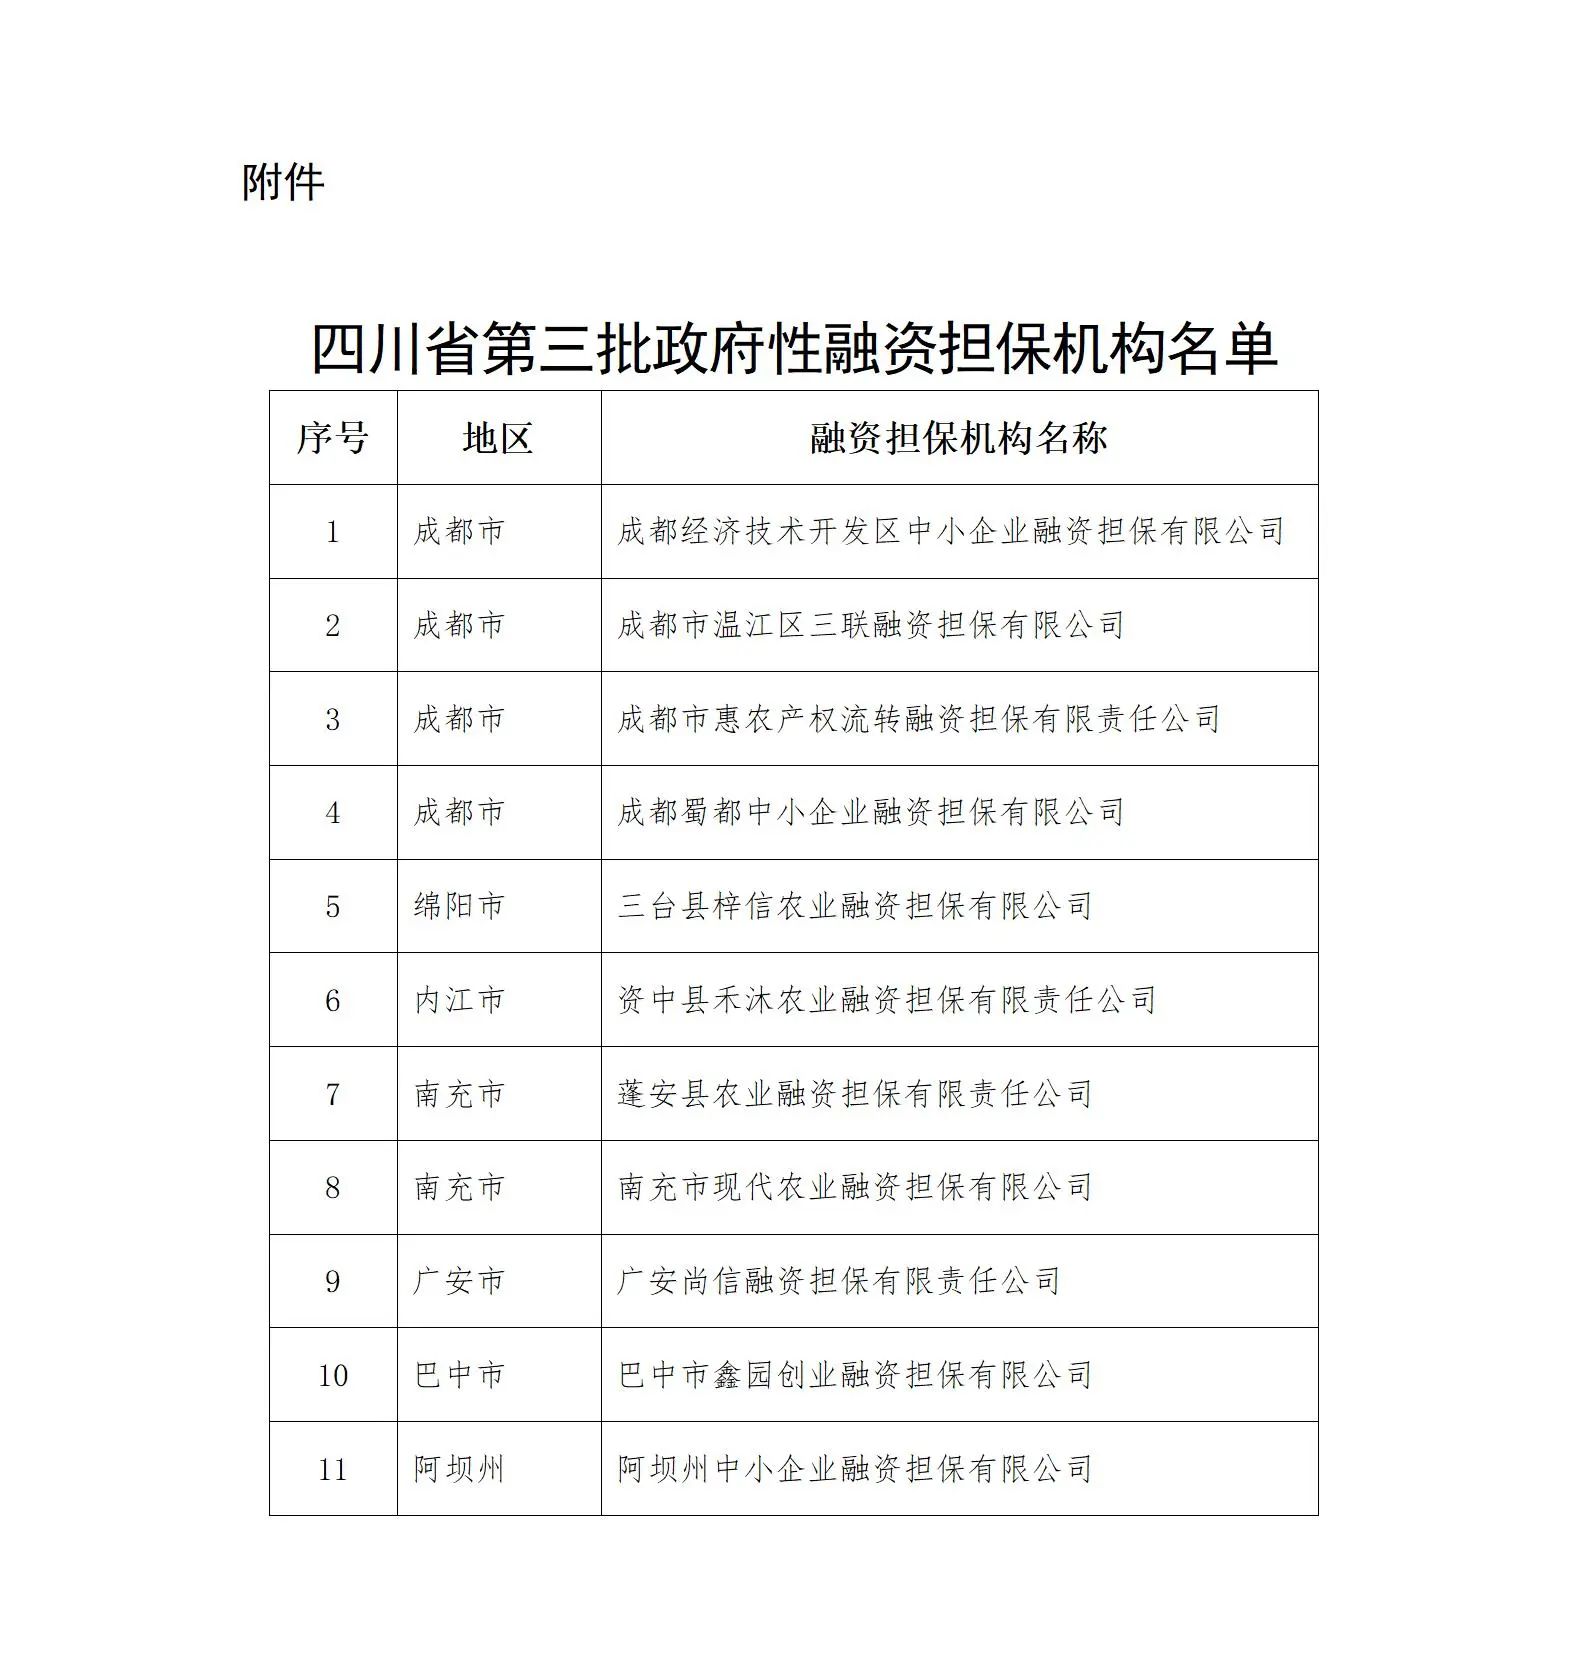 四川省第三批政府性融资担保机构名单公布